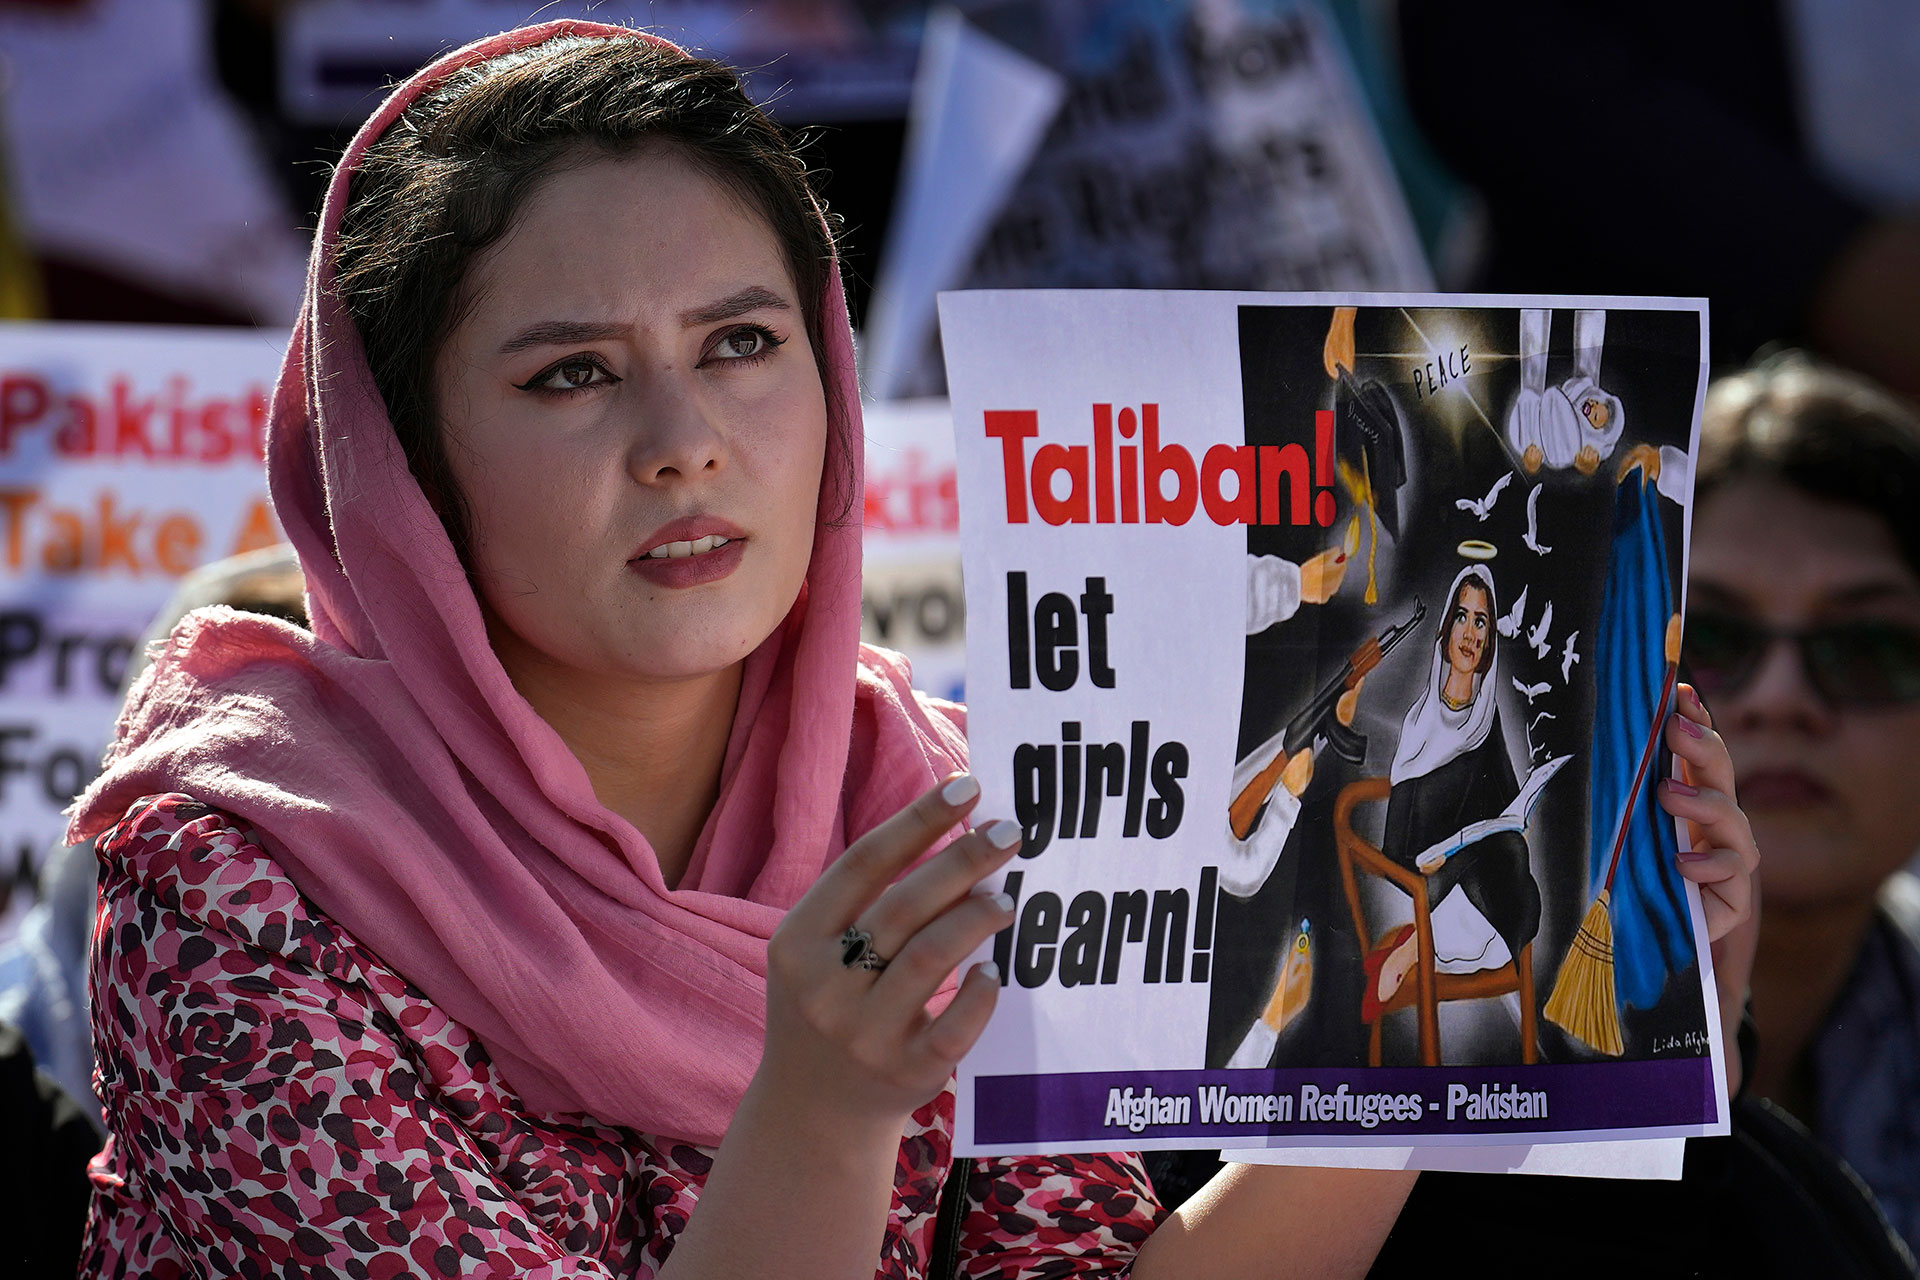 Una refugiada afgana participa en una manifestación en Islamabad, Pakistán, con un cartel pidiendo a los talibanes que dejen estudiar a las mujeres.